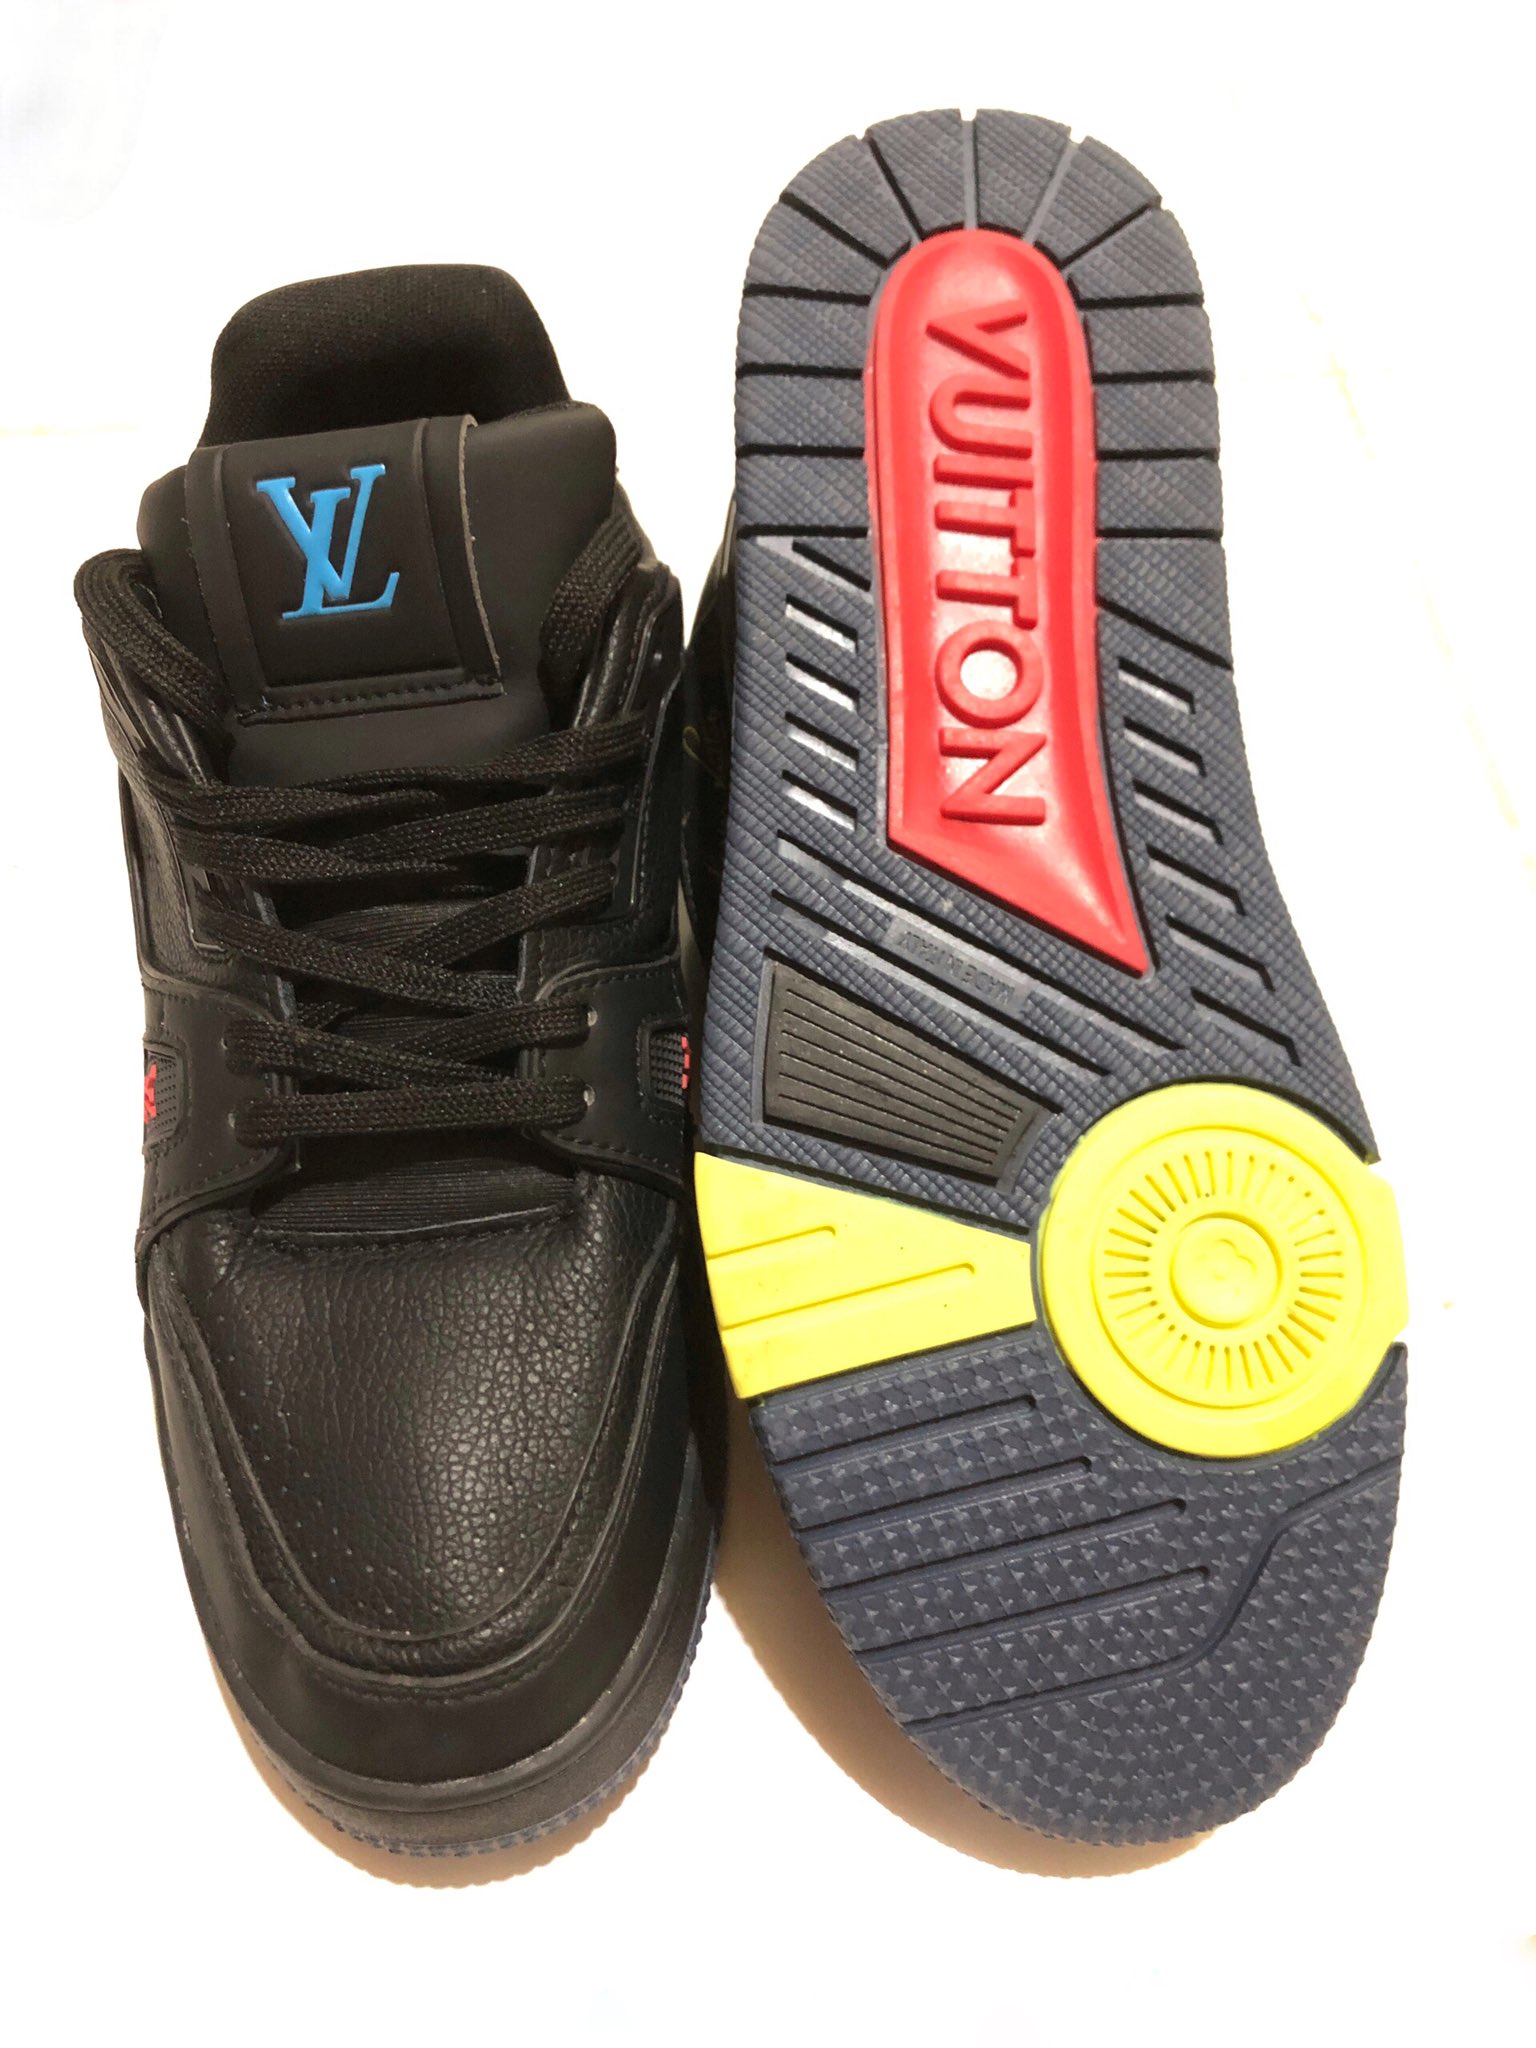 Mermaicula on X: Jual murah sneaker LV Trainer Black Signature